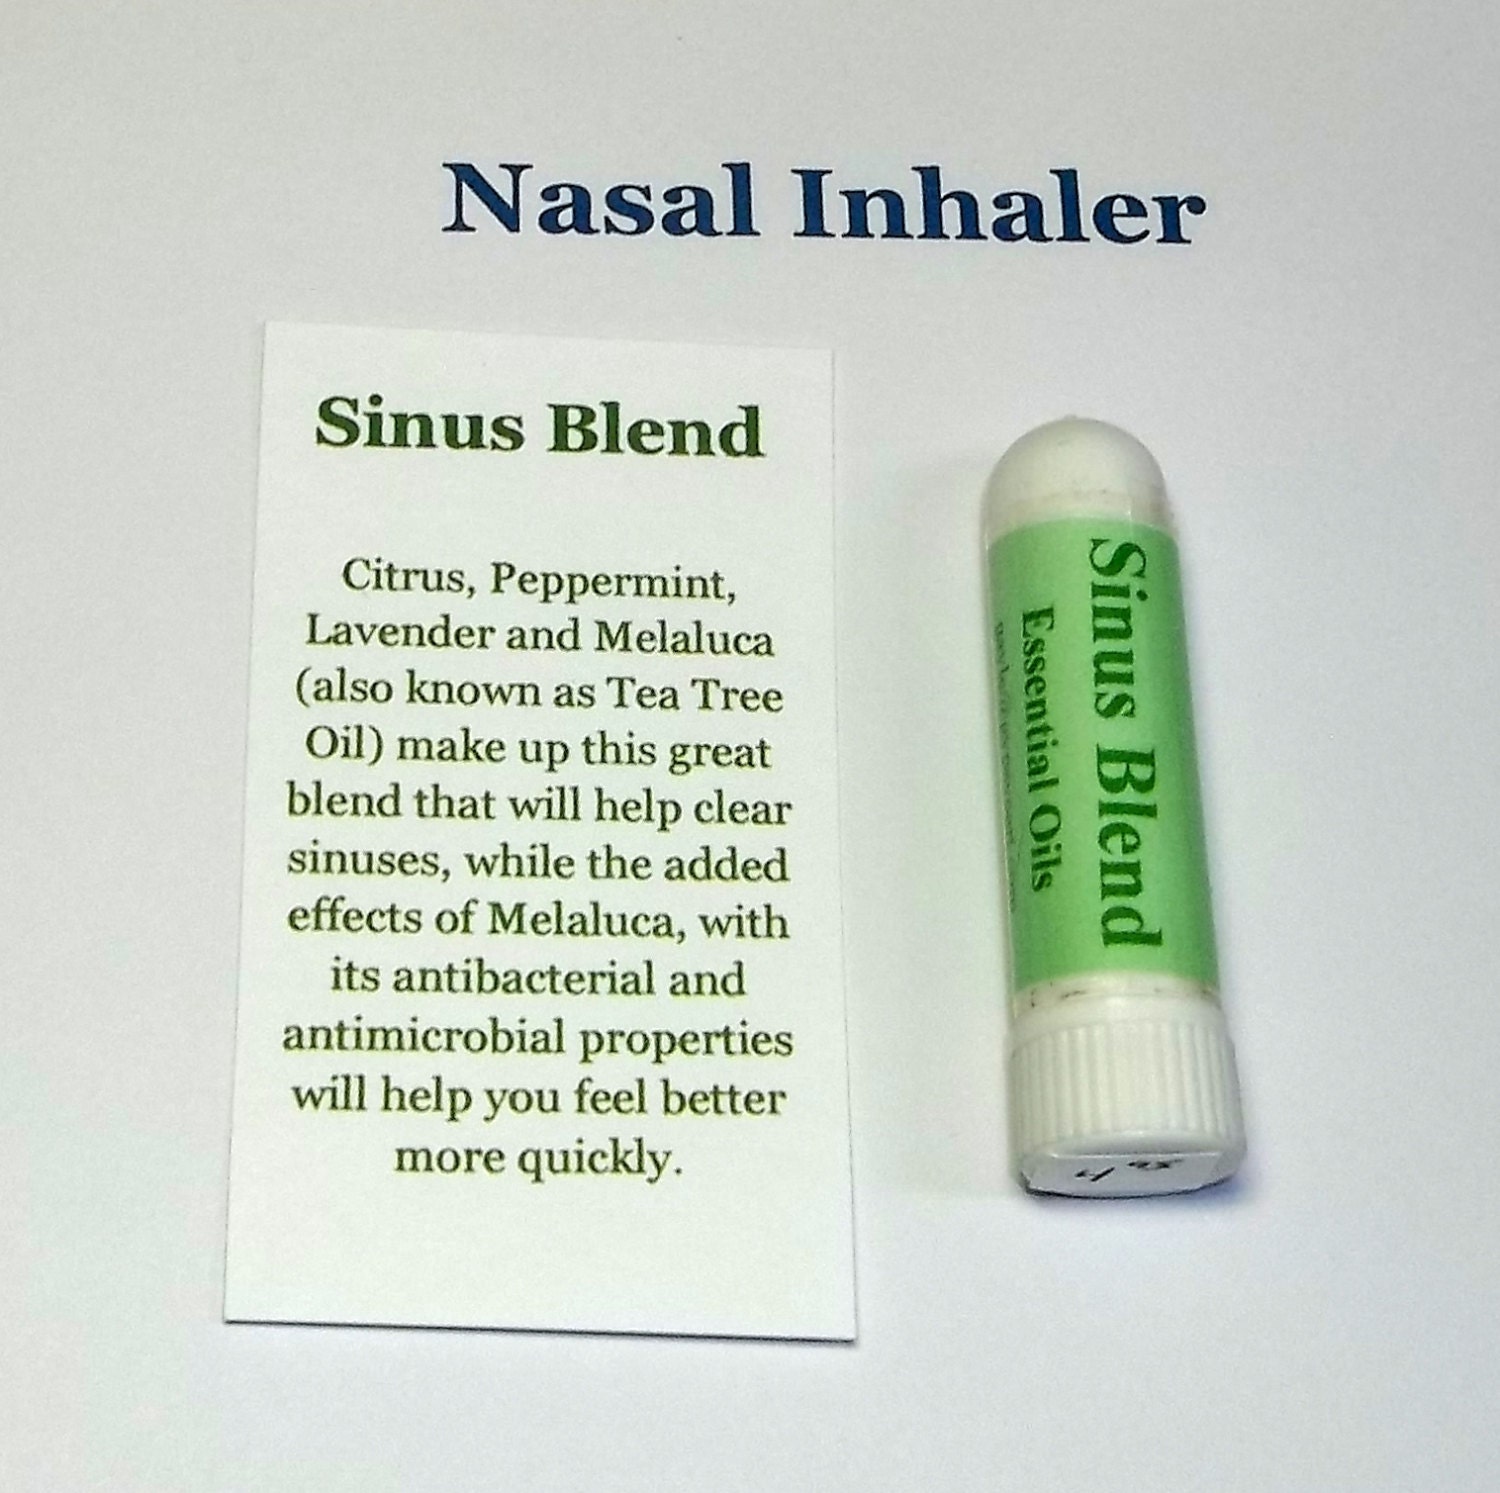 sinus inhaler